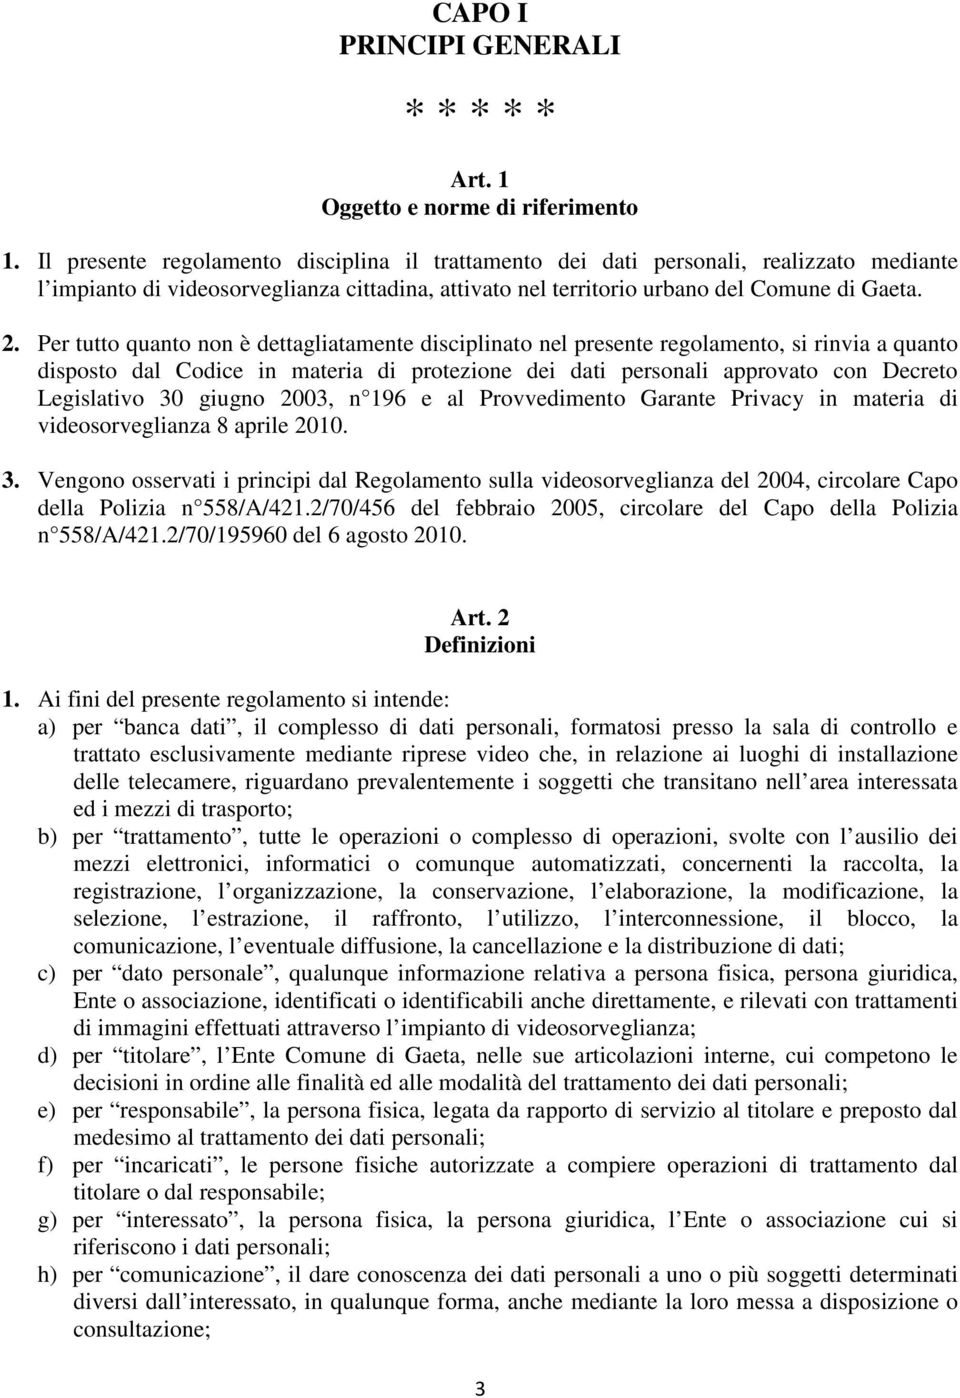 Per tutto quanto non è dettagliatamente disciplinato nel presente regolamento, si rinvia a quanto disposto dal Codice in materia di protezione dei dati personali approvato con Decreto Legislativo 30